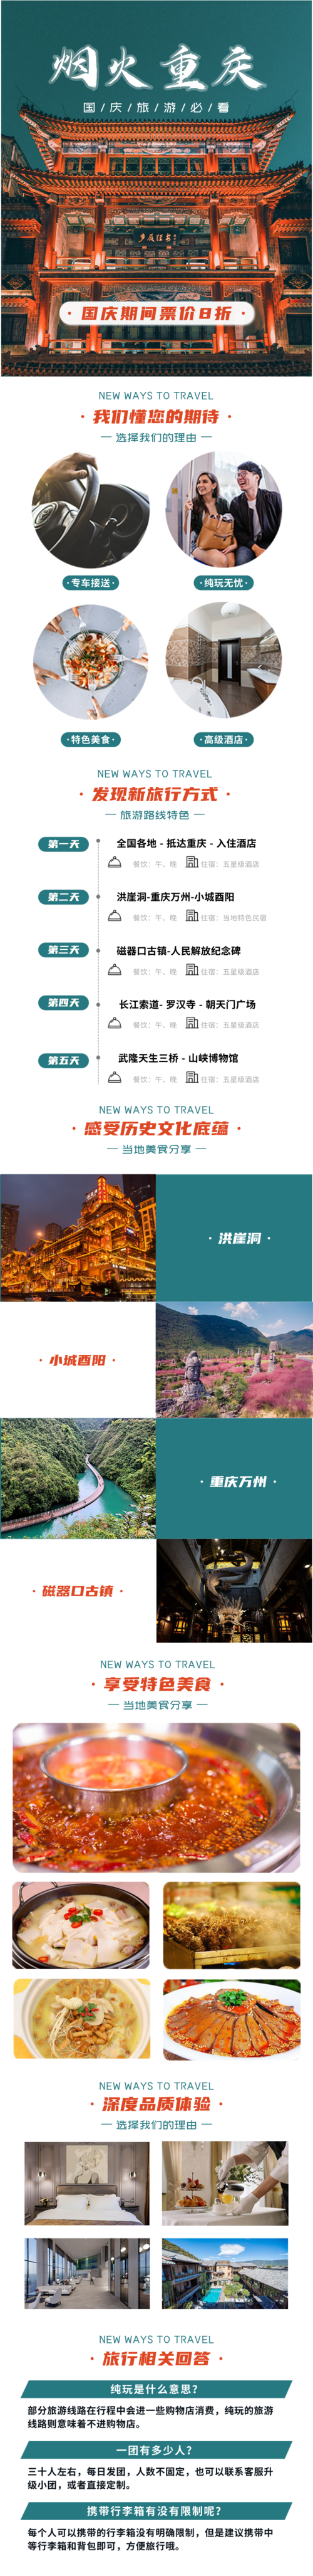 中国风国庆旅游宣传电商活动宝贝详情页